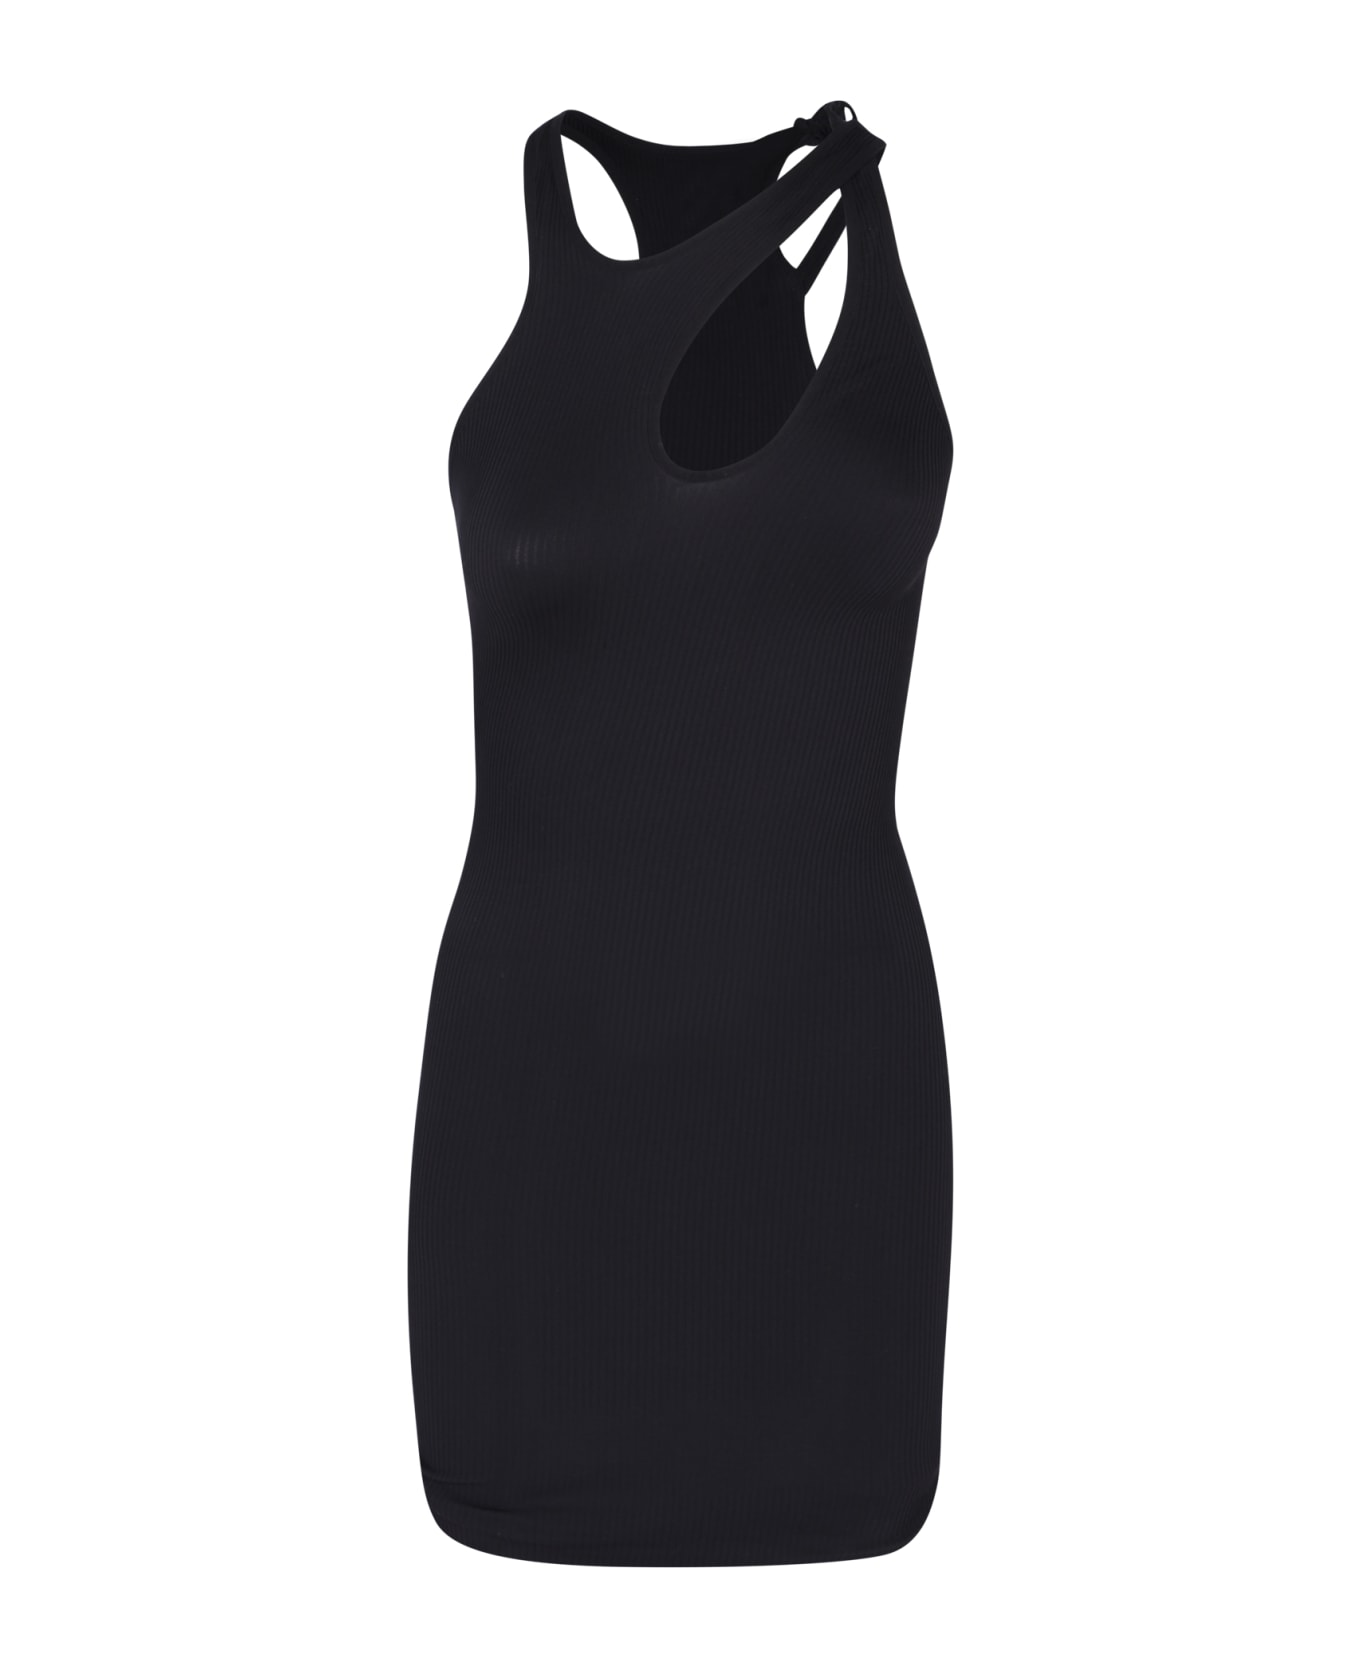 ANDREĀDAMO Cut-out Details Black Dress - Black